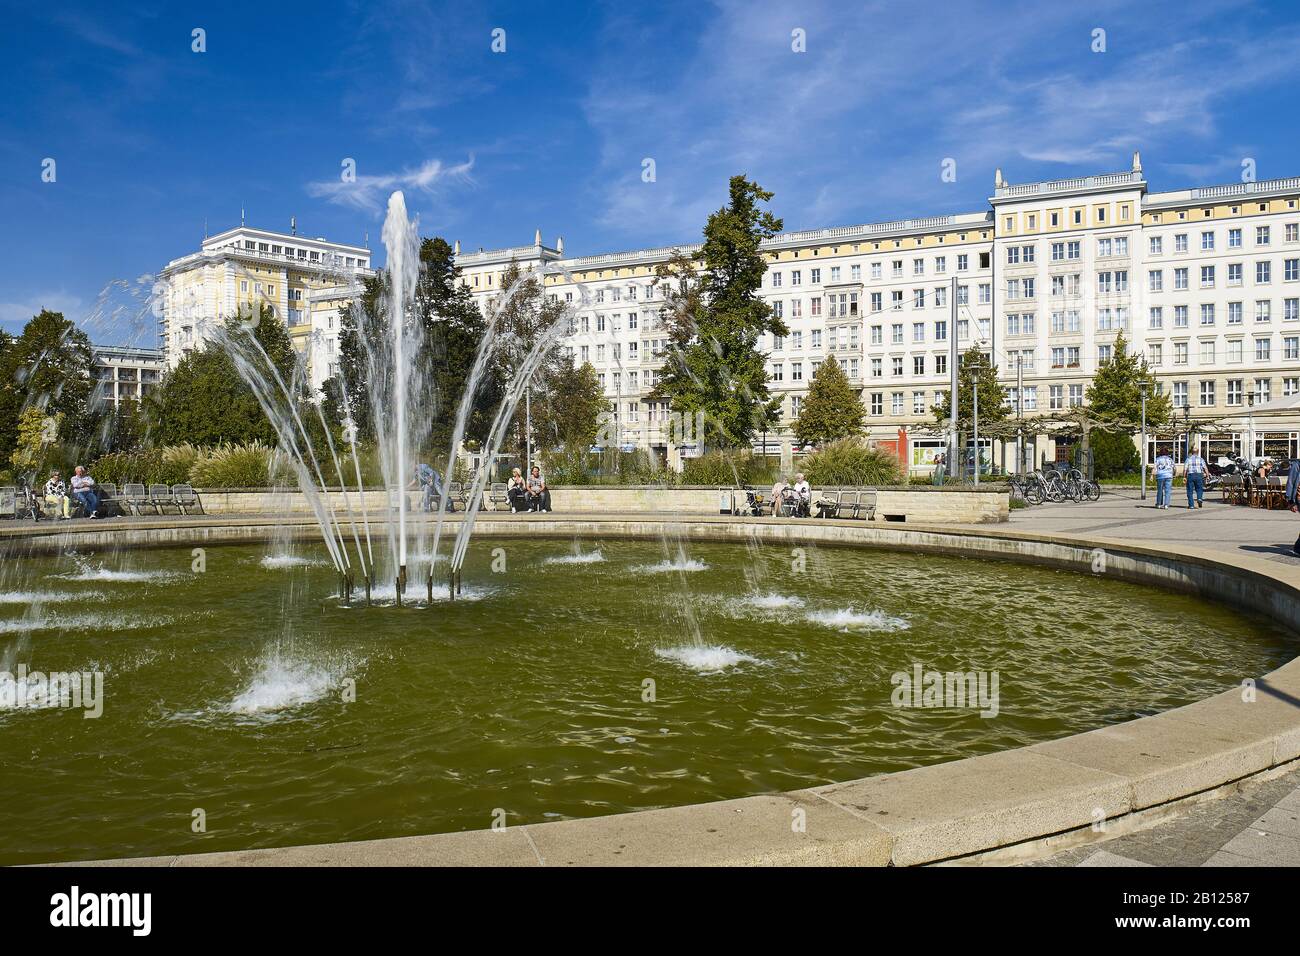 Ulrichplatz mit Gebäuden im Baustil des sozialistischen Klassizismus, Magdeburg, Sachsen-Anhalt, Deutschland Stockfoto